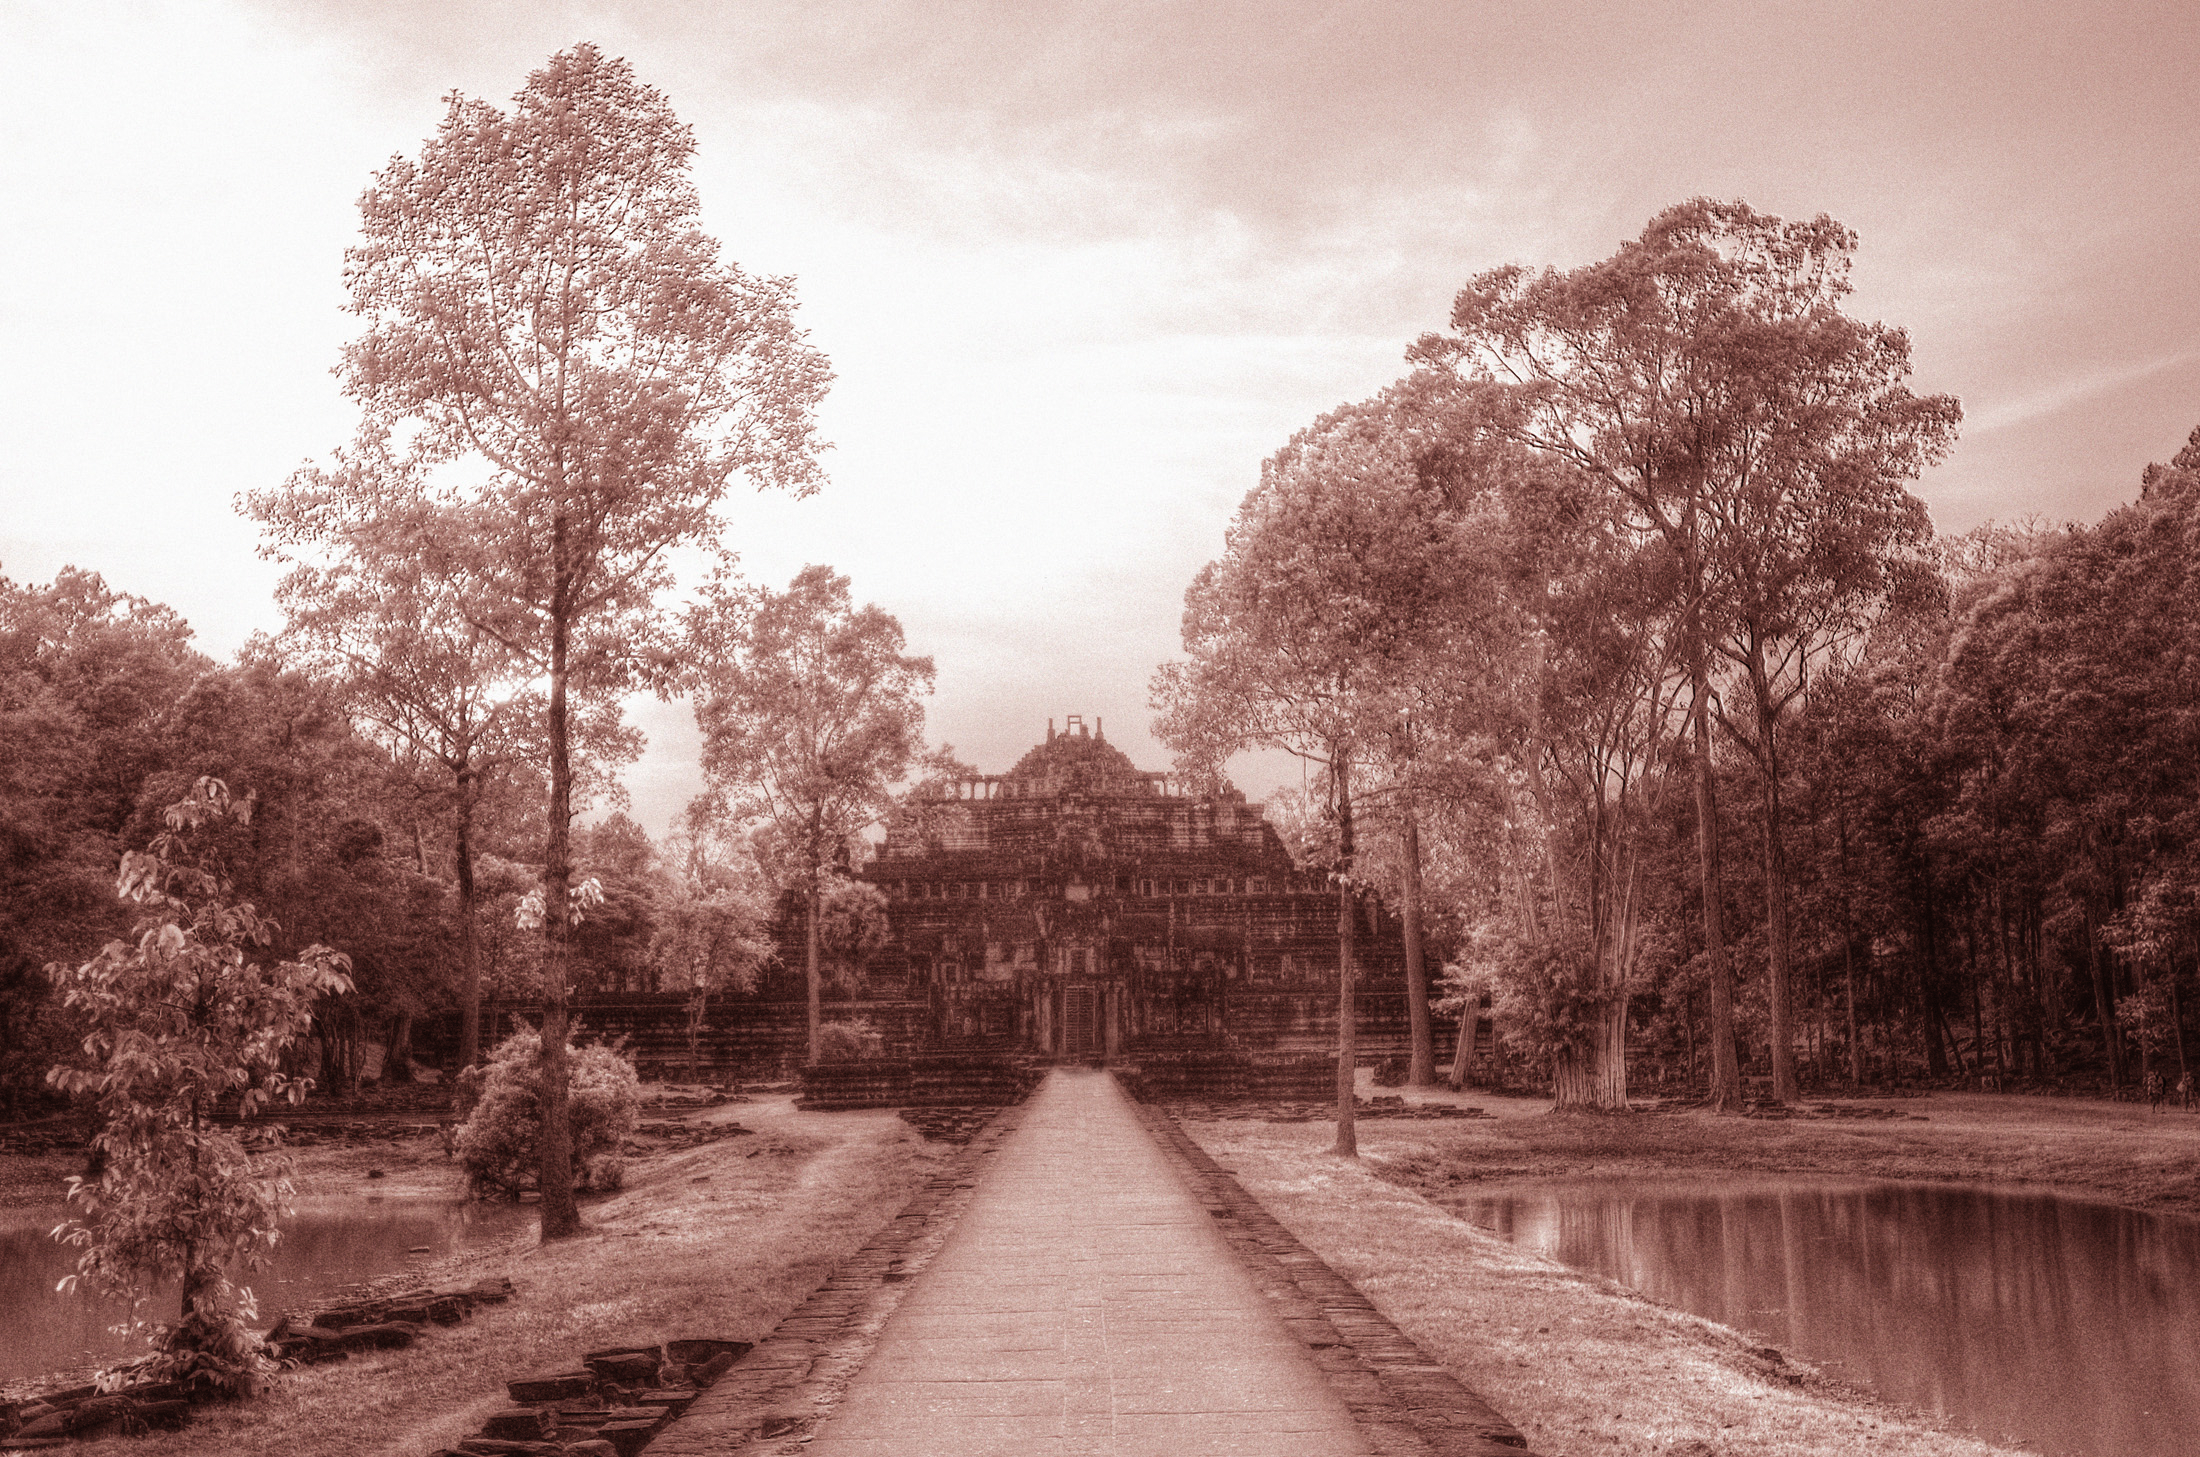 The King's Promenade at Angkor